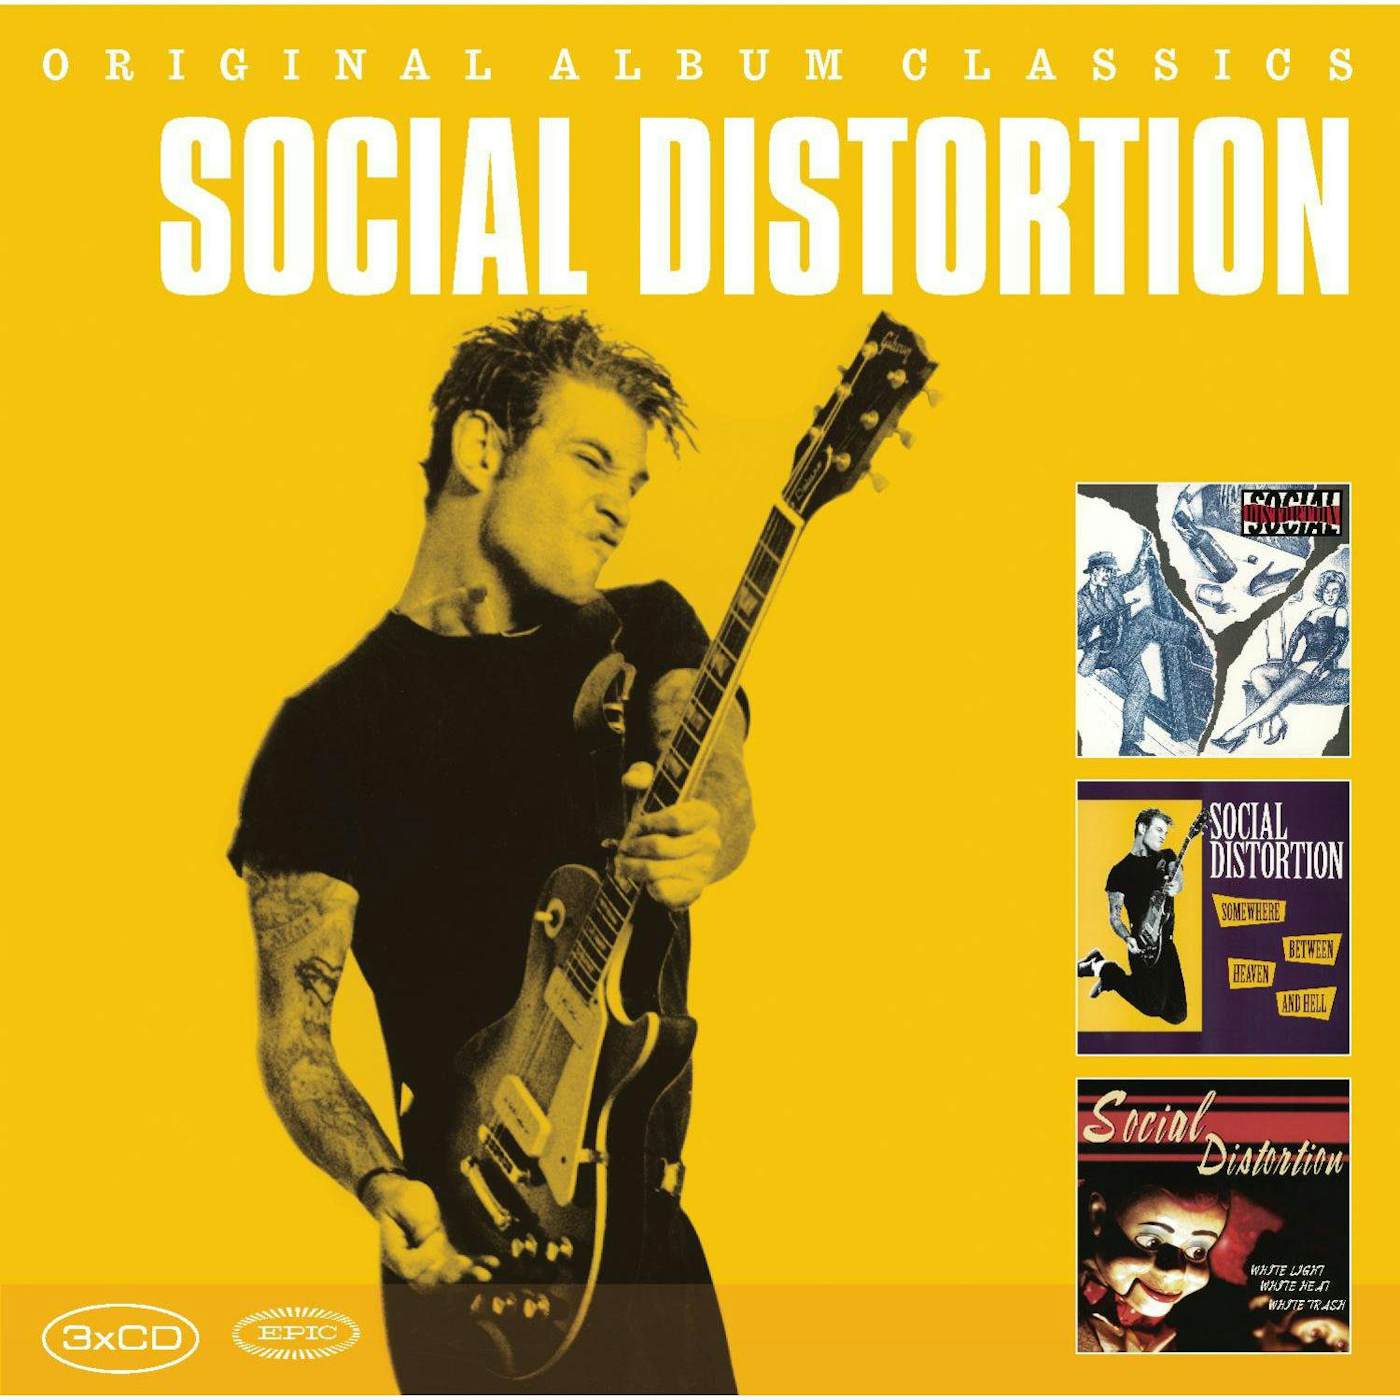 Social Distortion Original Album Classics CD Box Set